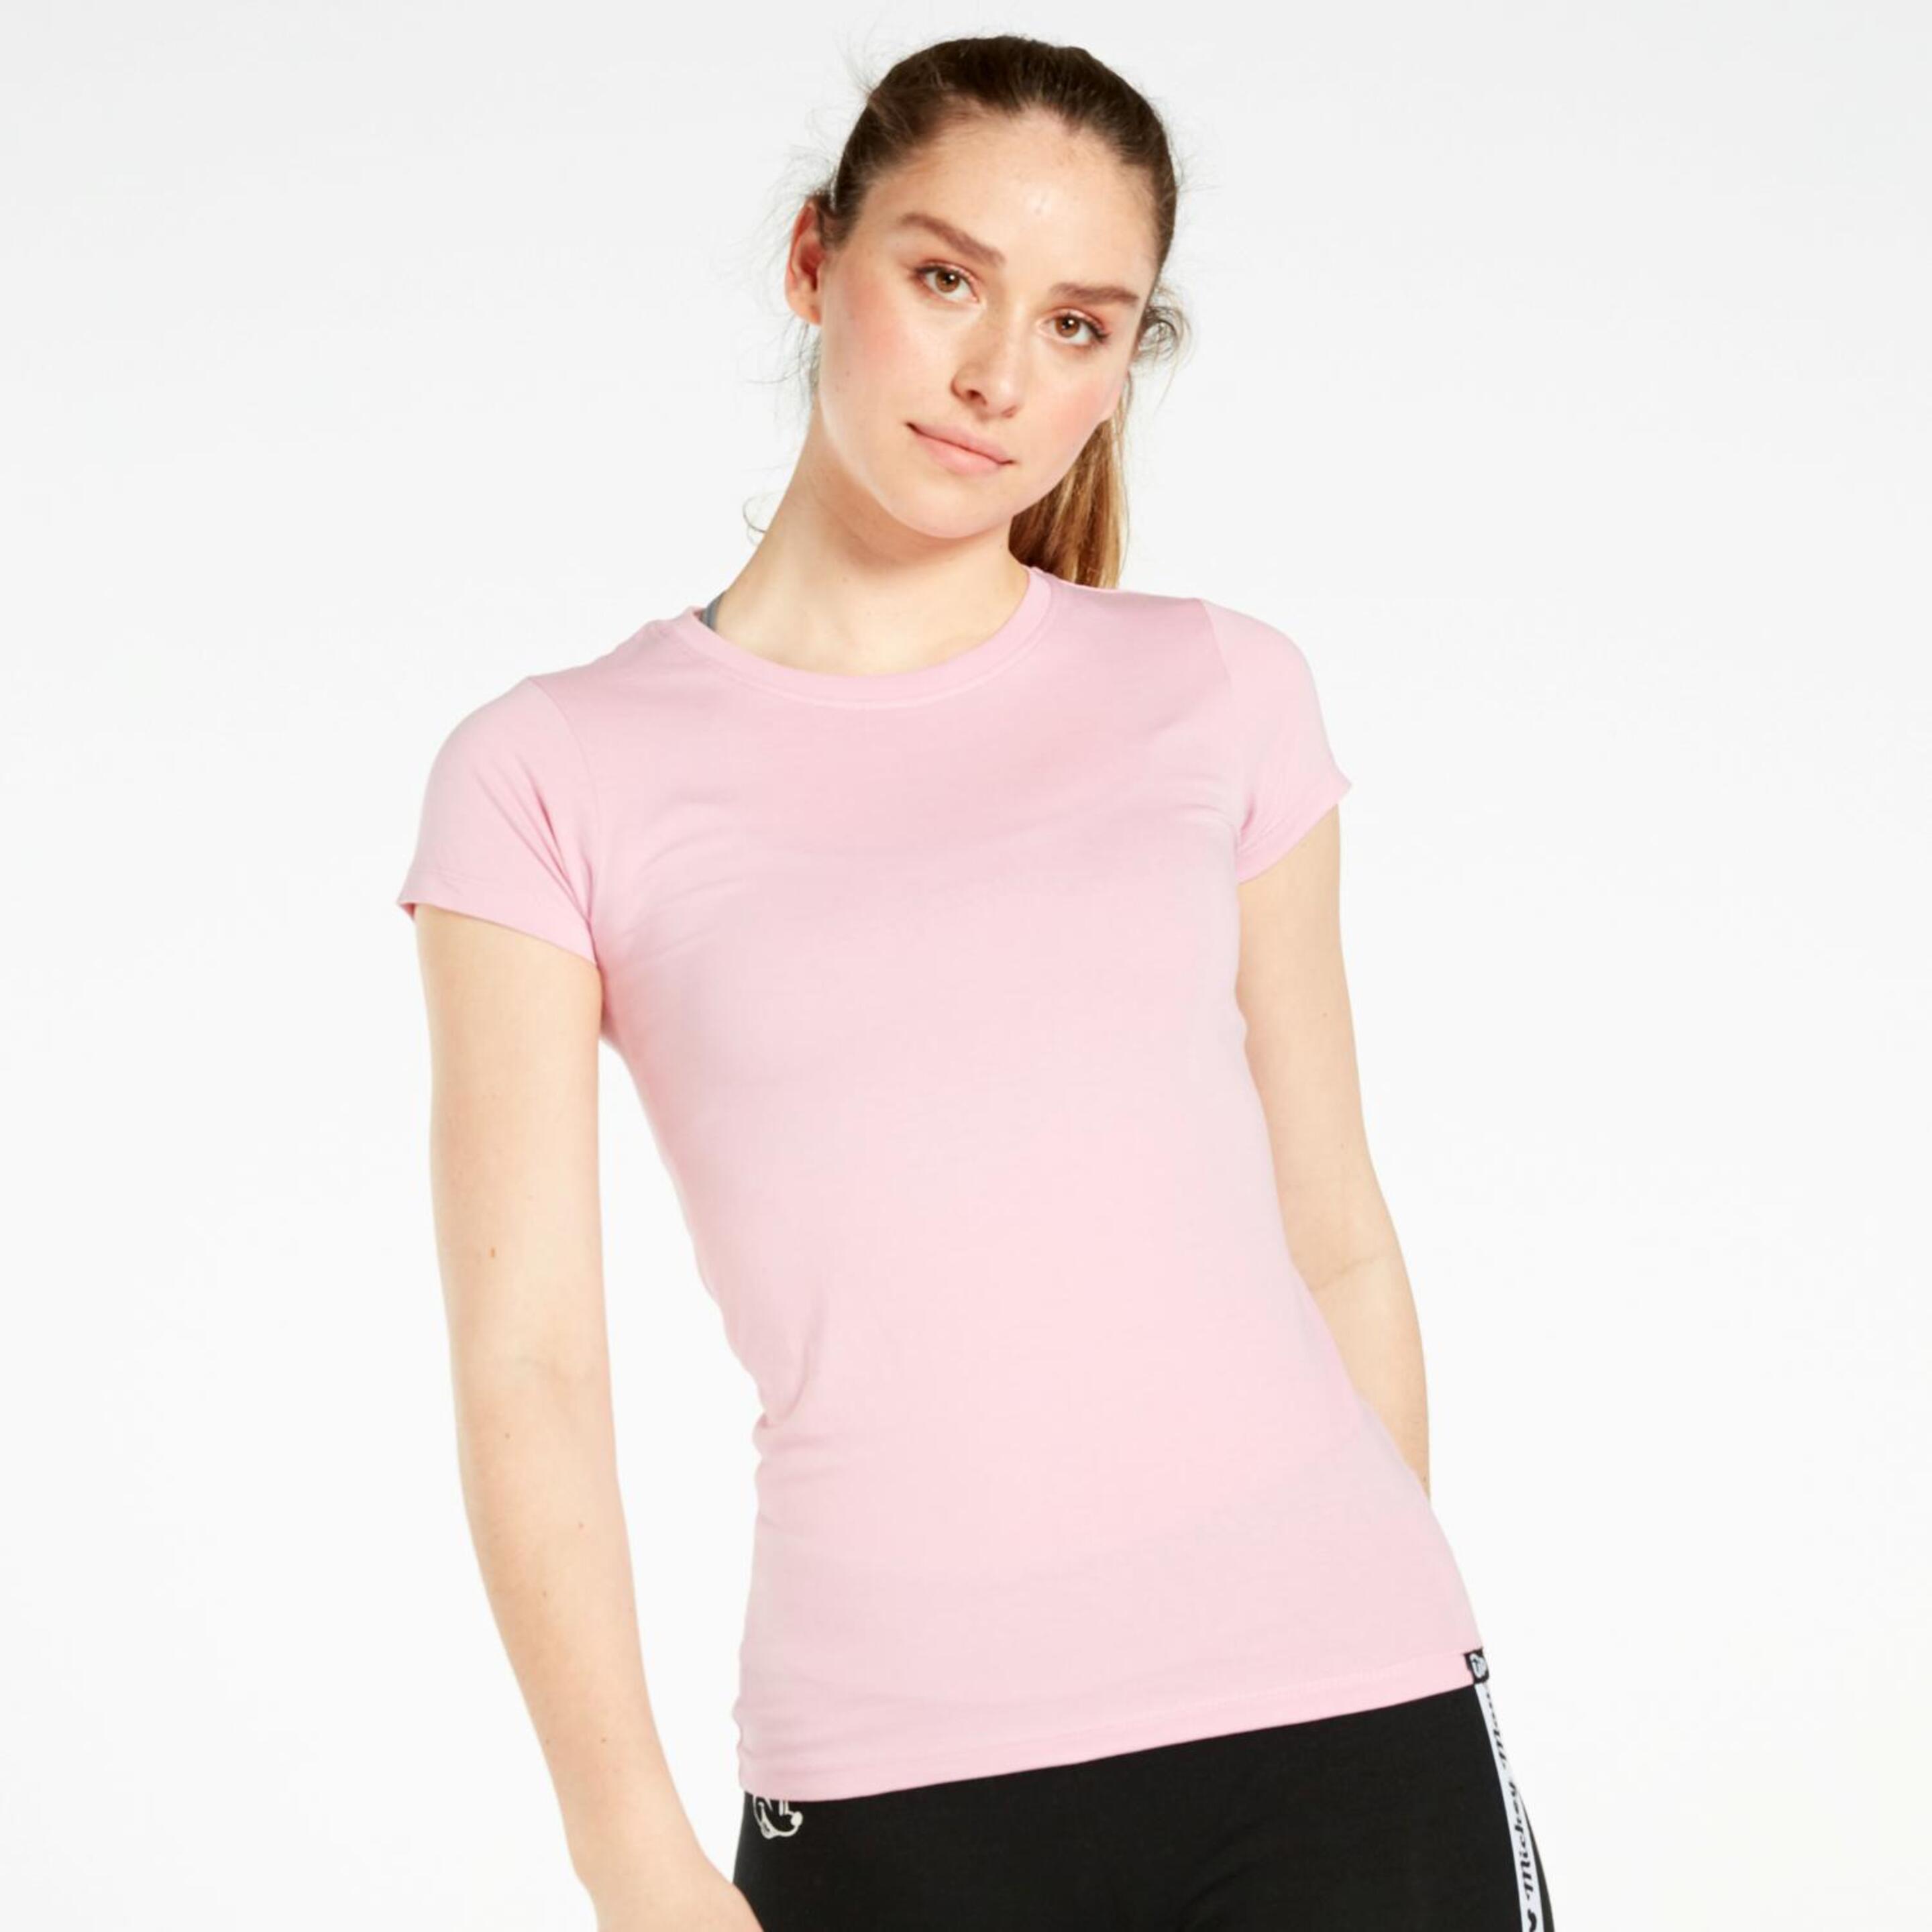 Camiseta Up Basic - Rosa - Camiseta Manga Corta Mujer